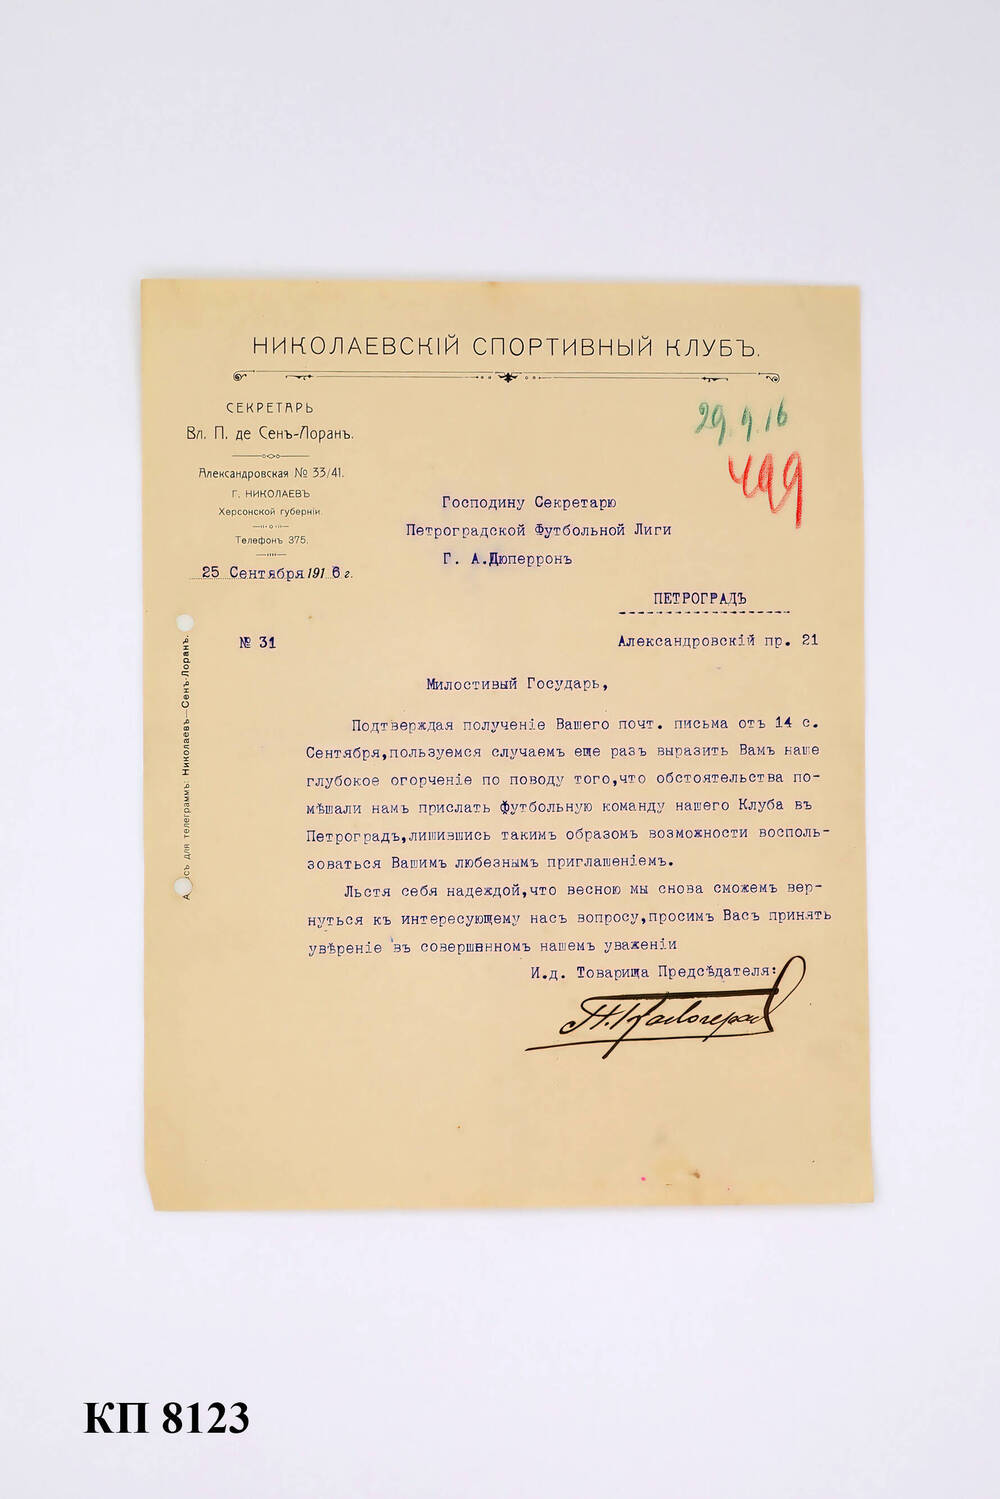 Письмо на бланке секретаря Николаевского спортивного клуба, адресовано Дюперрону, 25 сентября 1916 г.